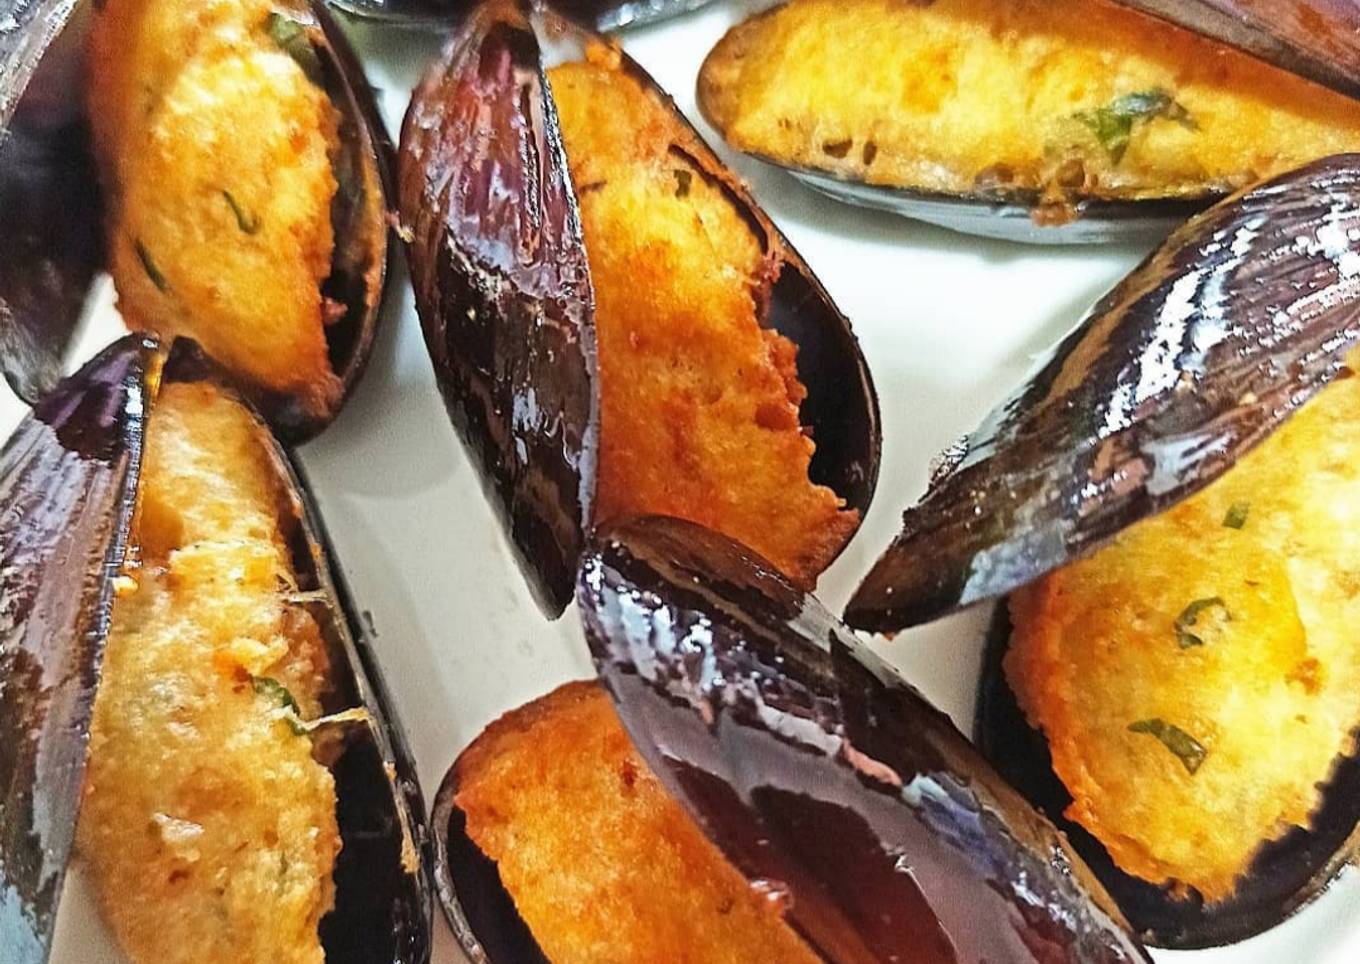 Fried stuffed mussels